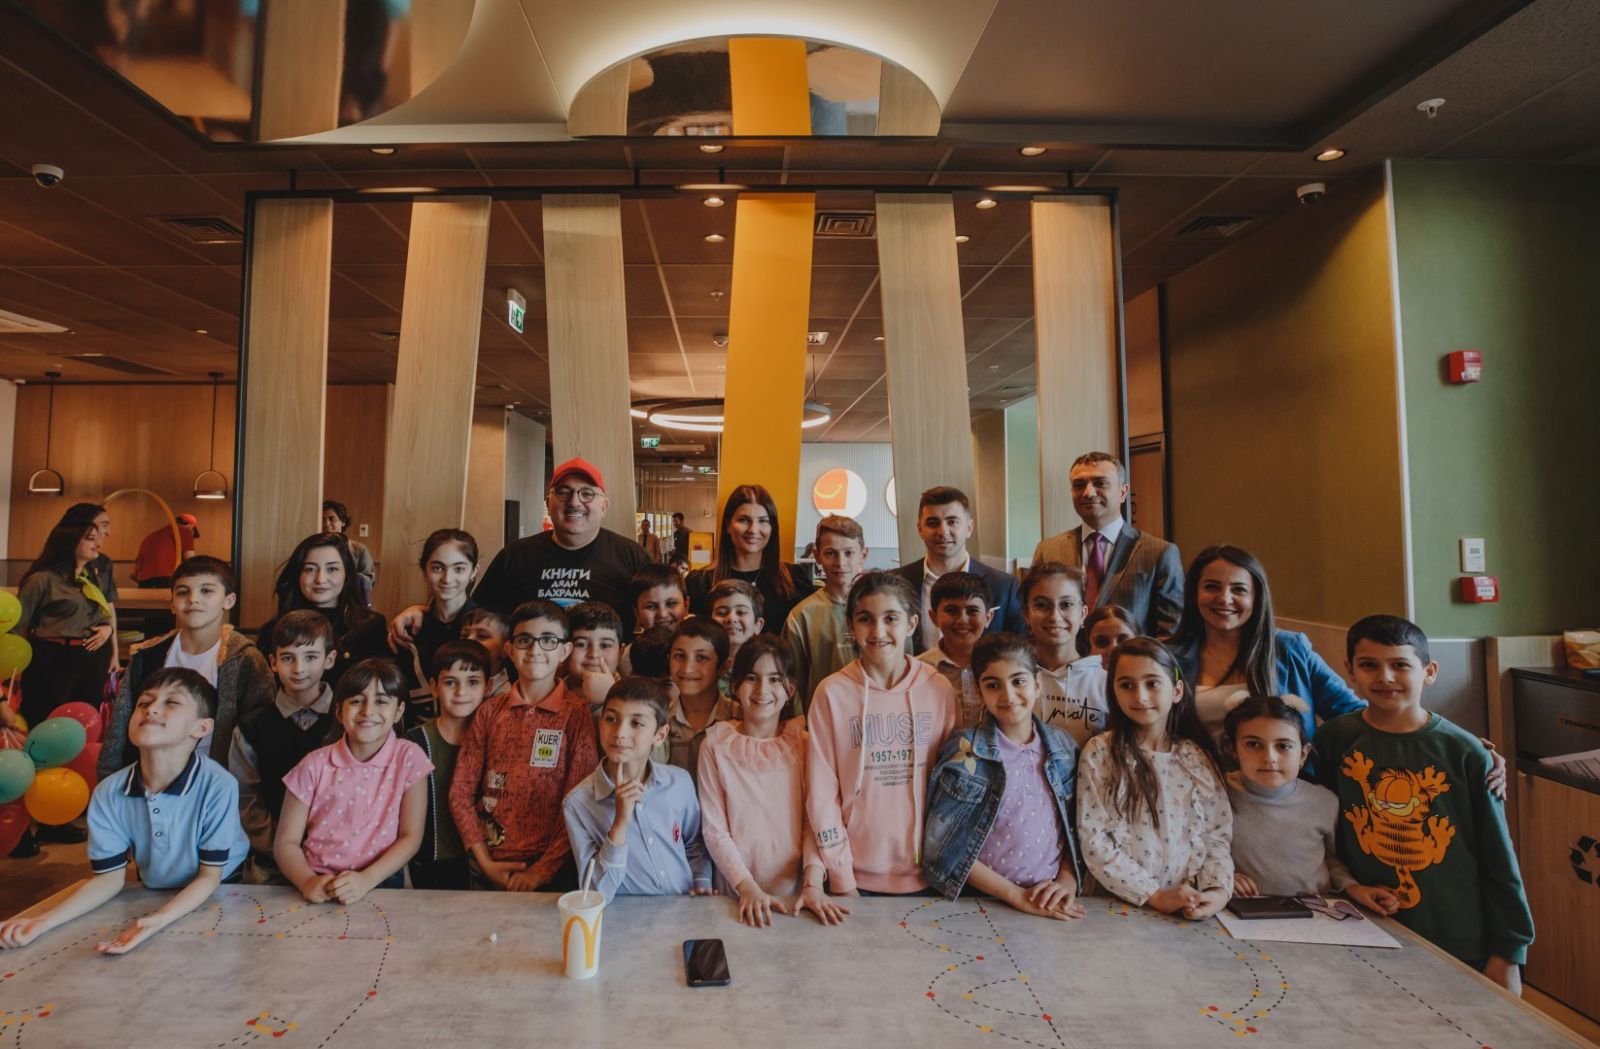 «McDonald's Azərbaycan» и ГФСЗ организовали семинар для детей ветеранов (ФОТО/ВИДЕО)